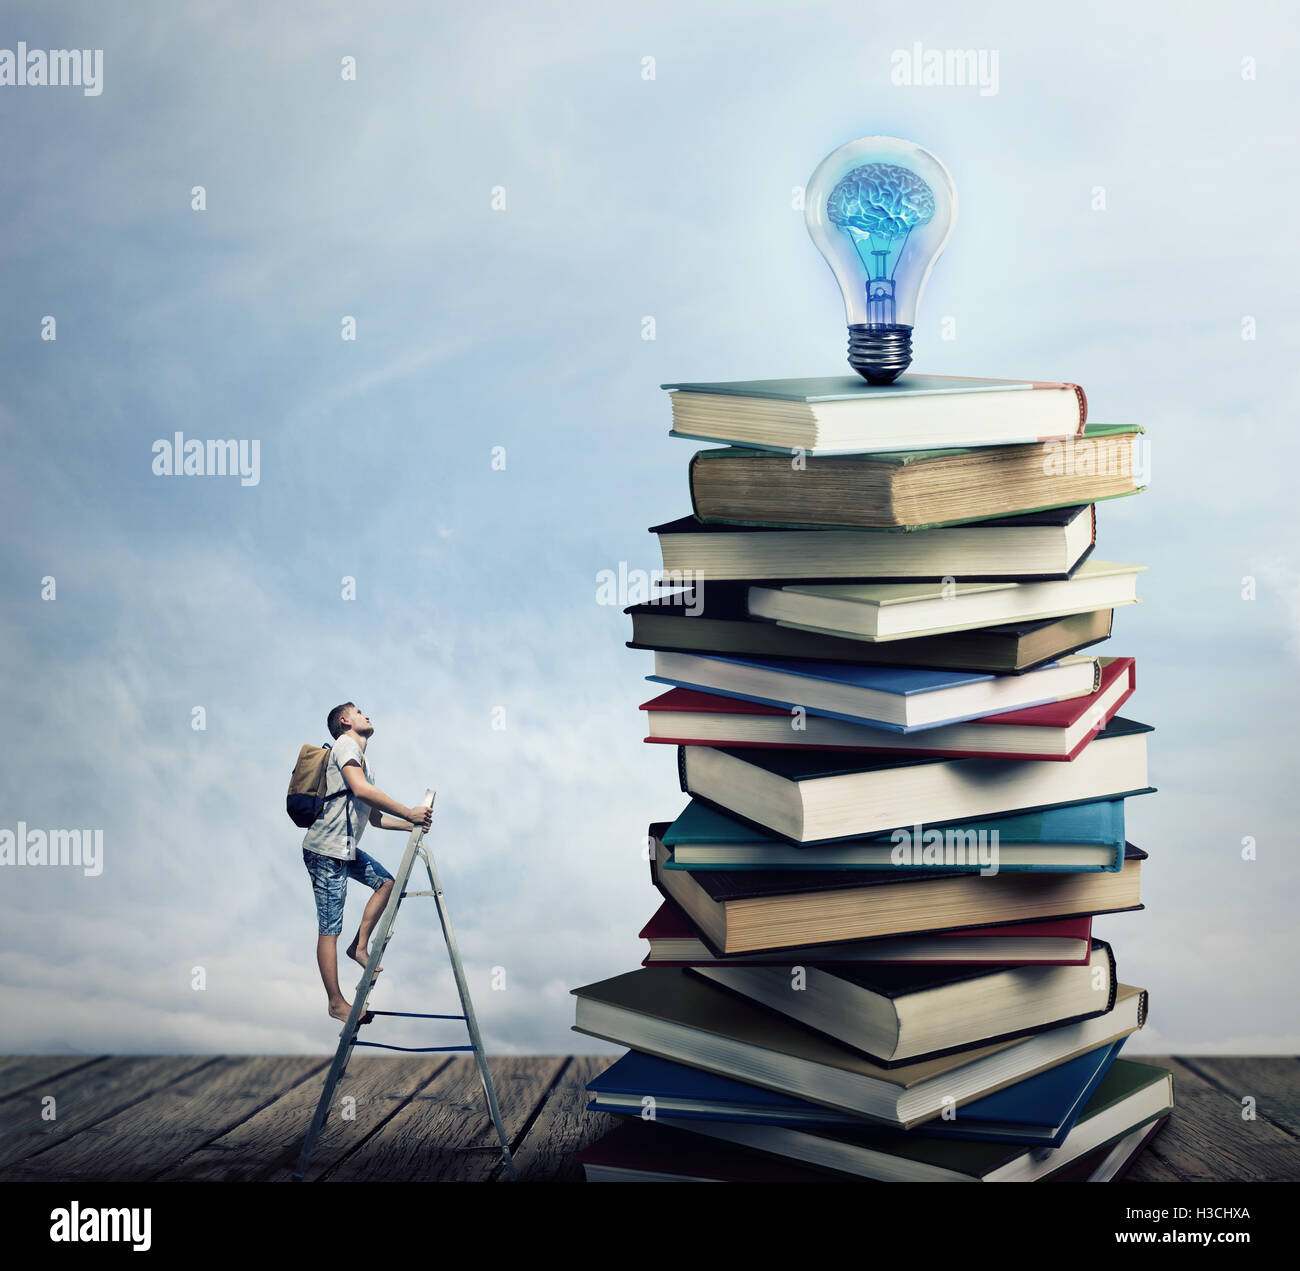 Jeune garçon sur l'échelle, avec un sac sur son dos, essayant d'une pile de livres à la recherche d'une ampoule électrique. À la recherche d'apprendre Banque D'Images